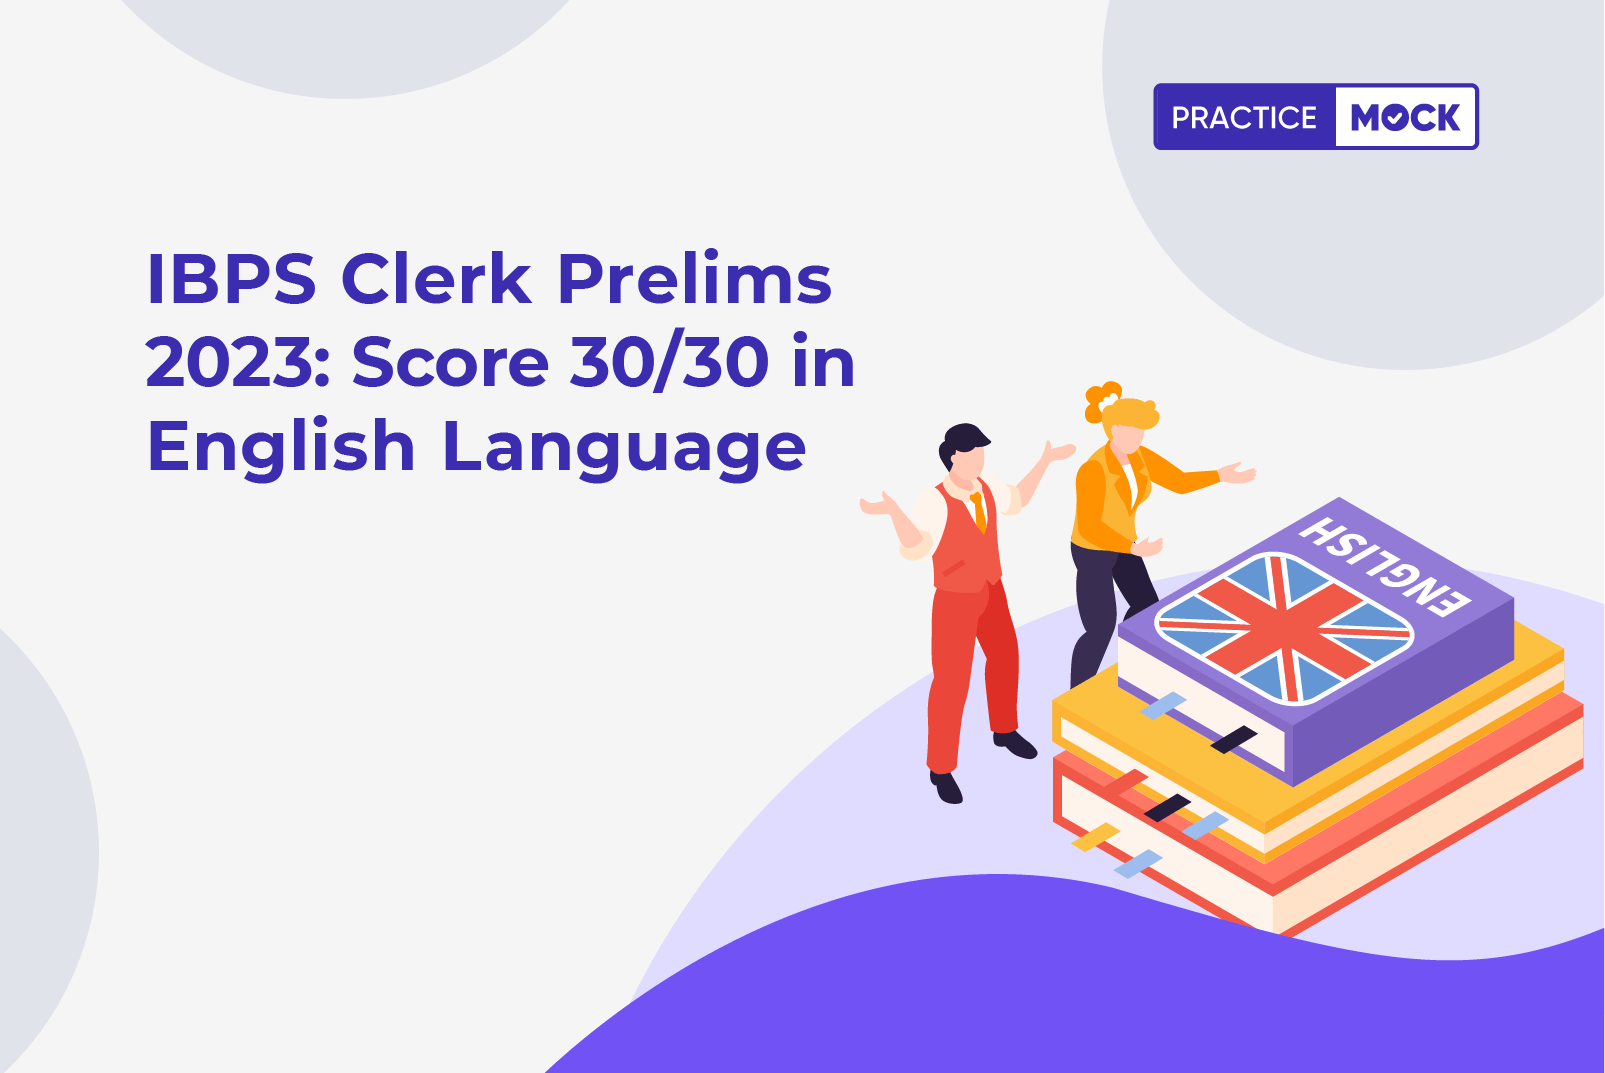 IBPS-Clerk-Prelims-2023-Score-3030-in-English-Language